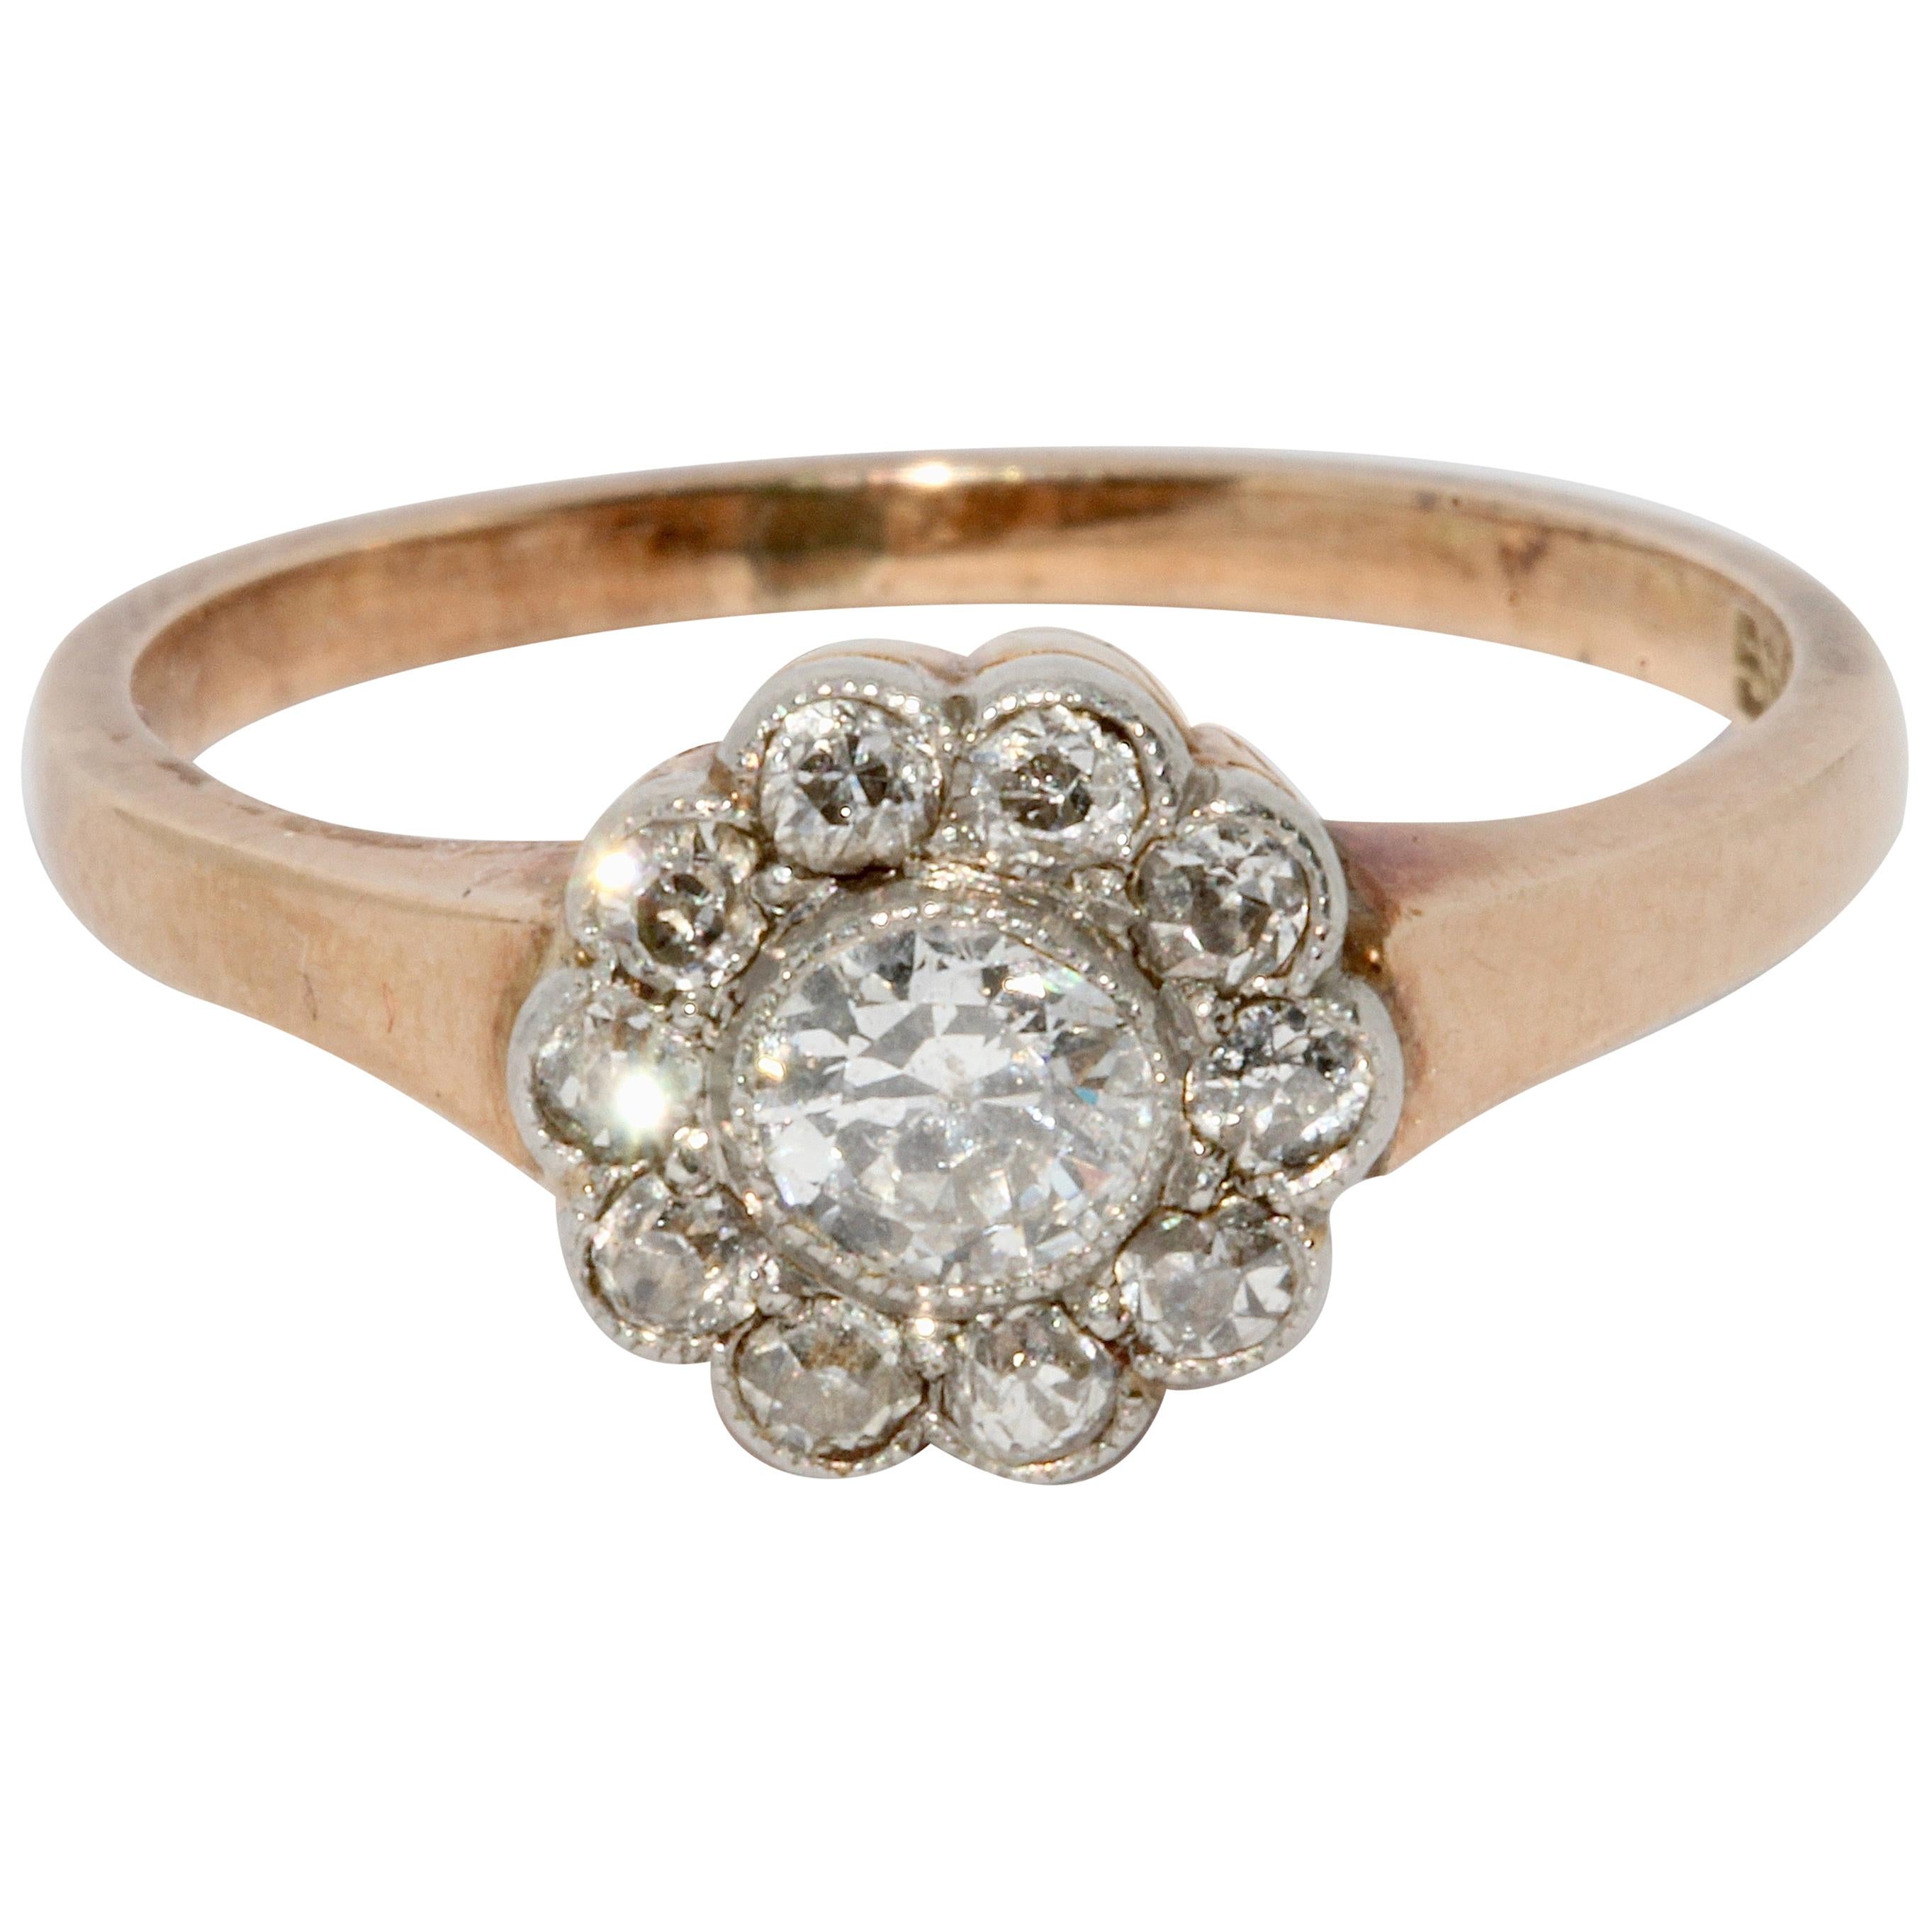 Antique Old Cut Diamond Ring, 14 Karat Gold, Art Nouveau